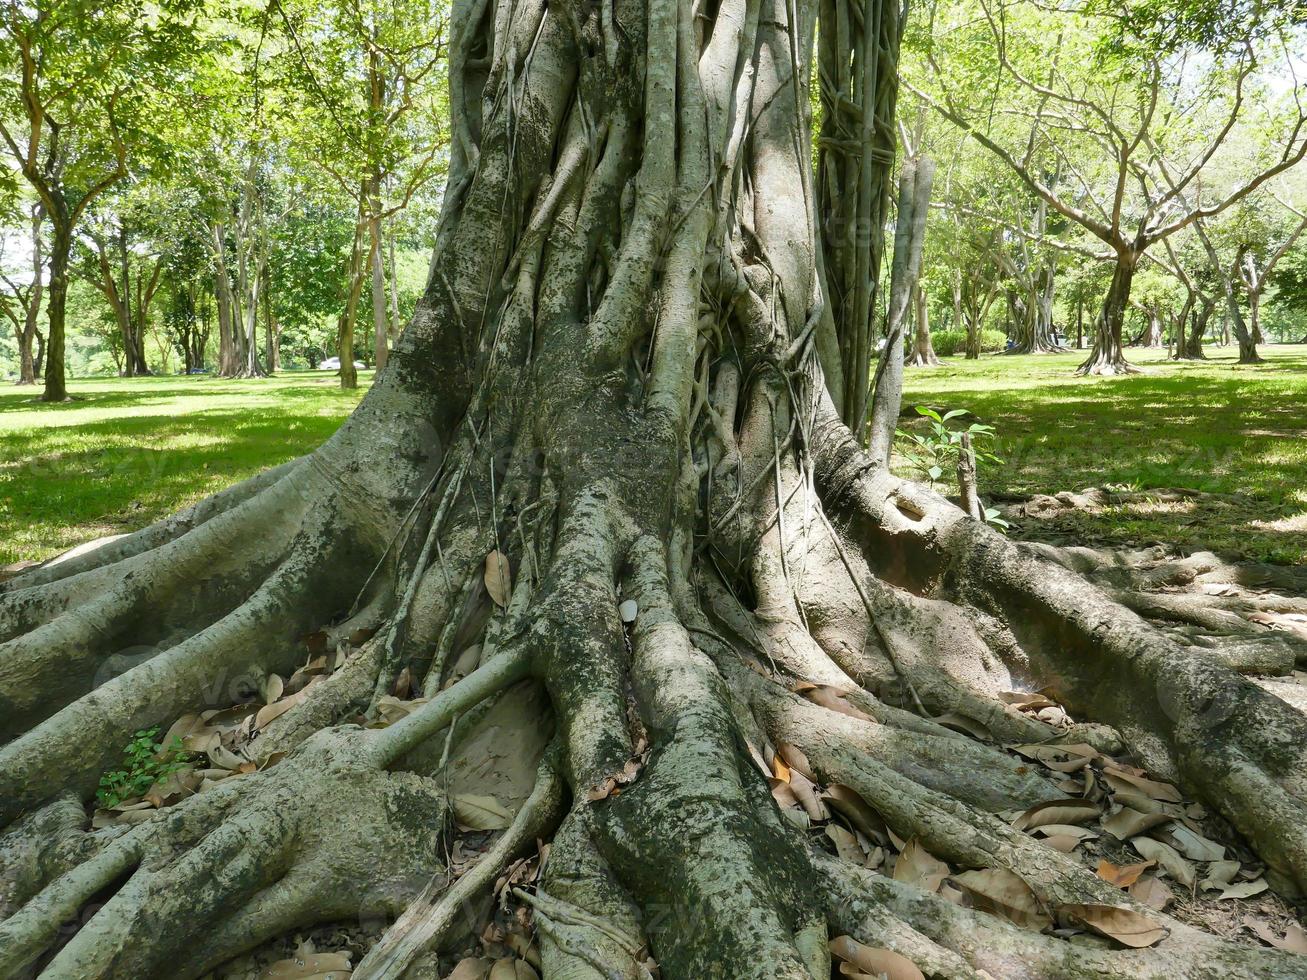 un grand arbre avec des racines couvrant le sol, un grand arbre dans le jardin photo